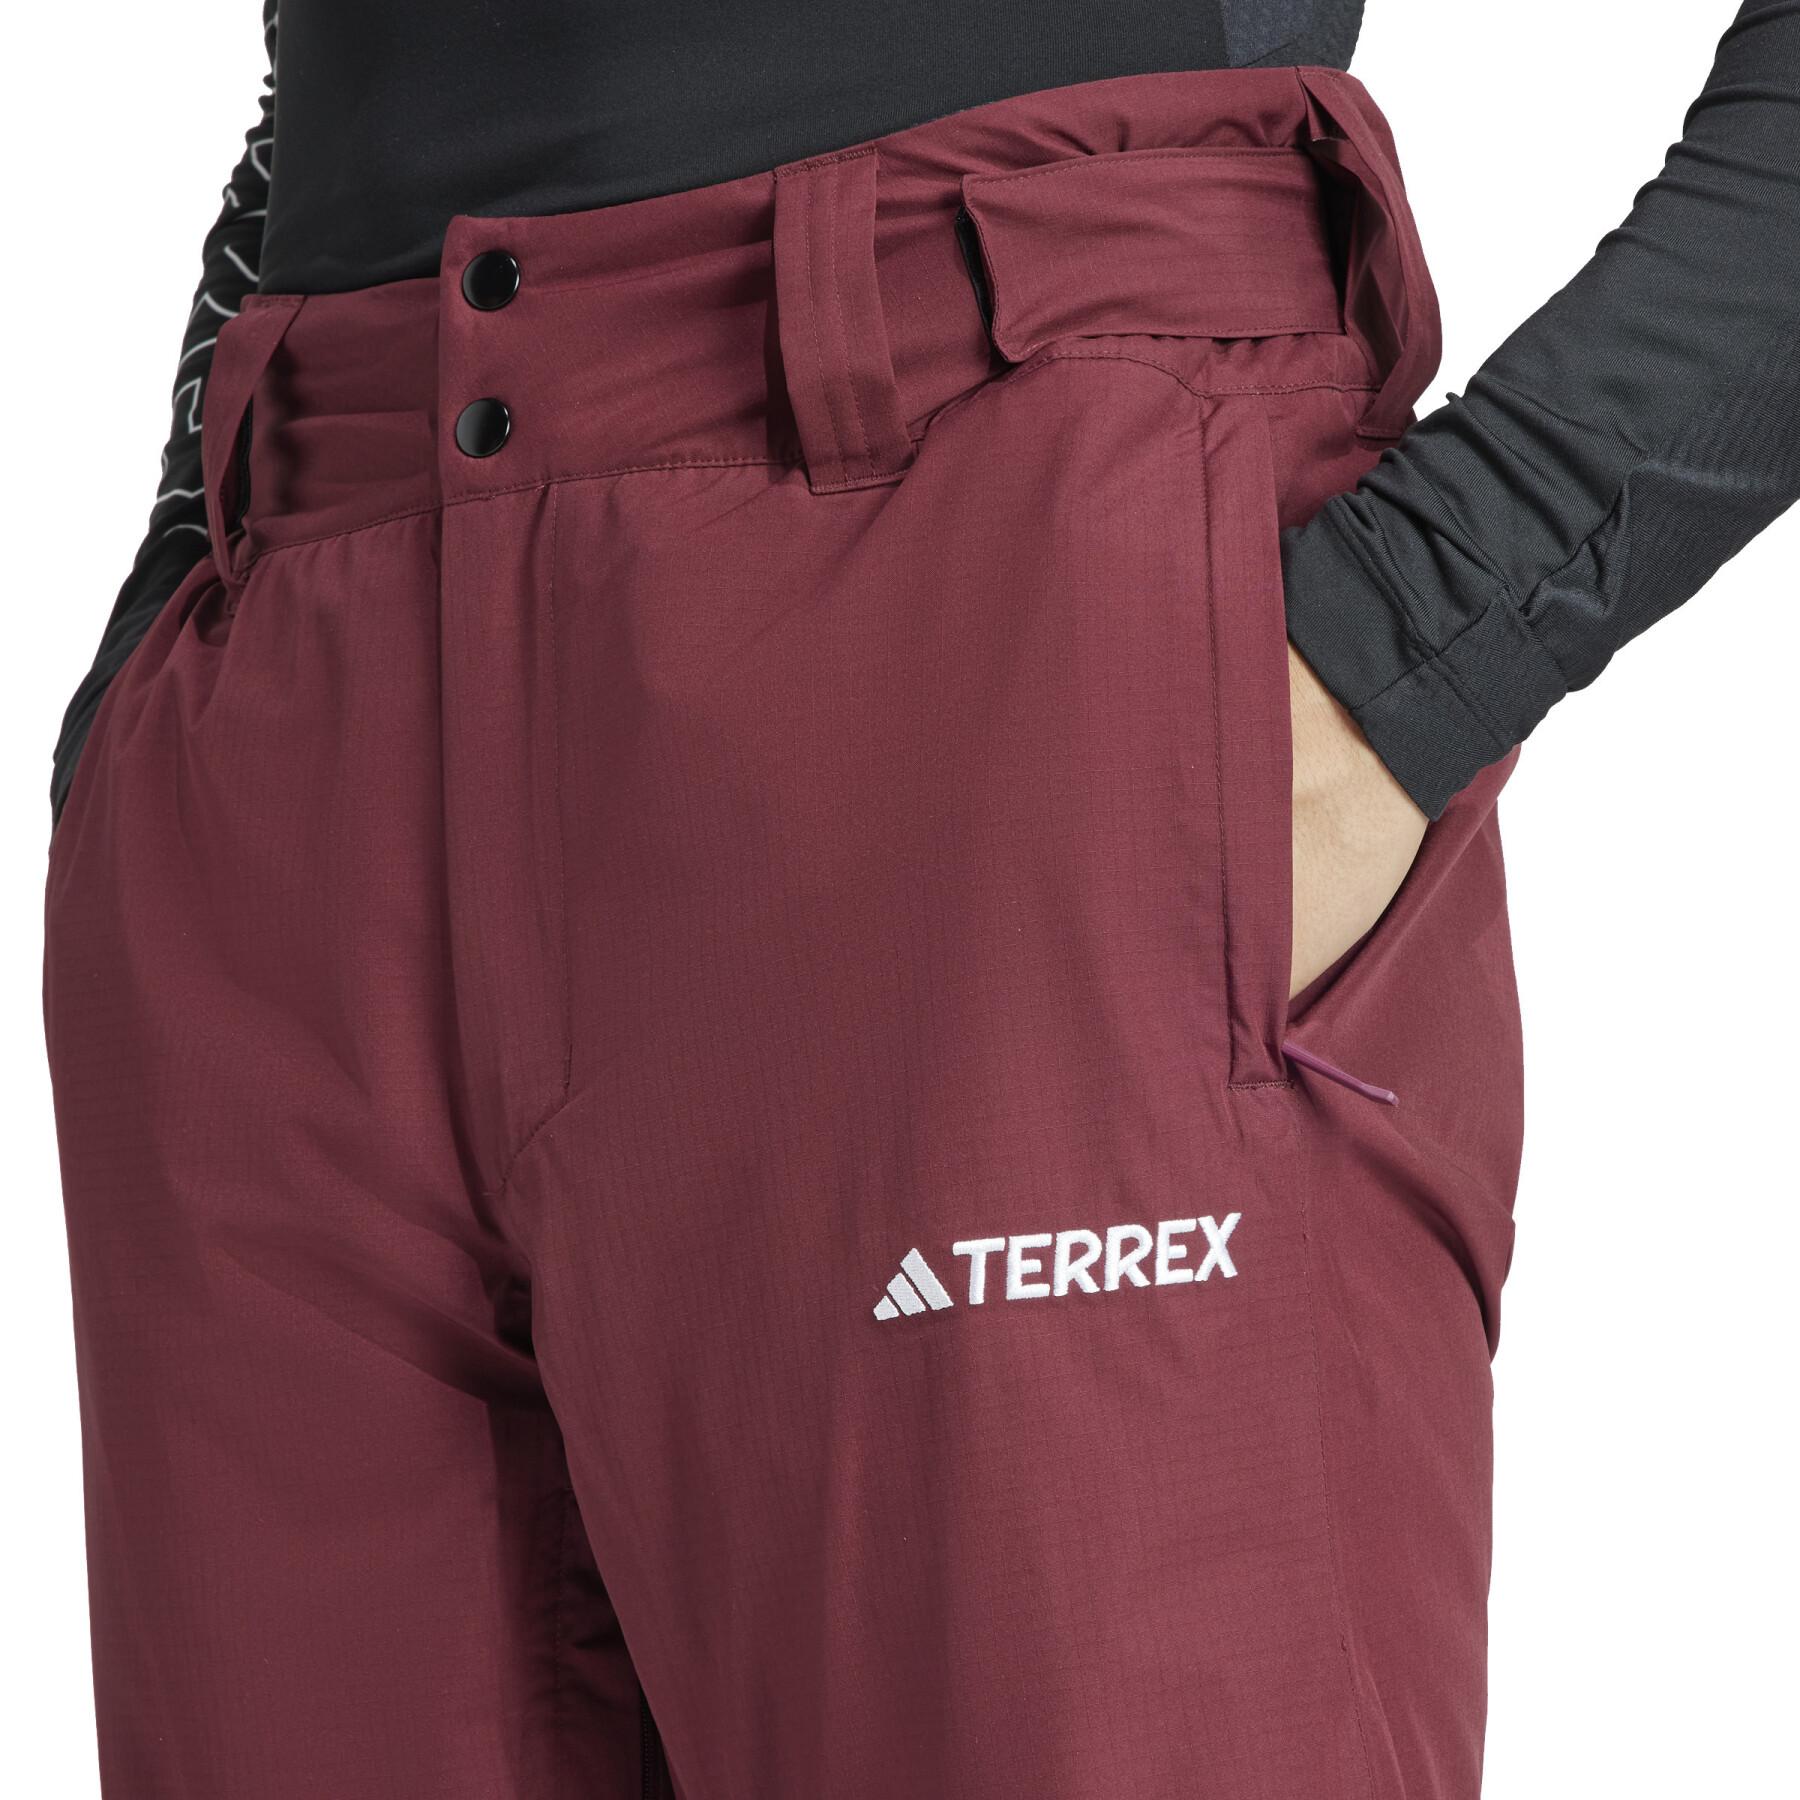 Ski pants adidas Terrex Xperior